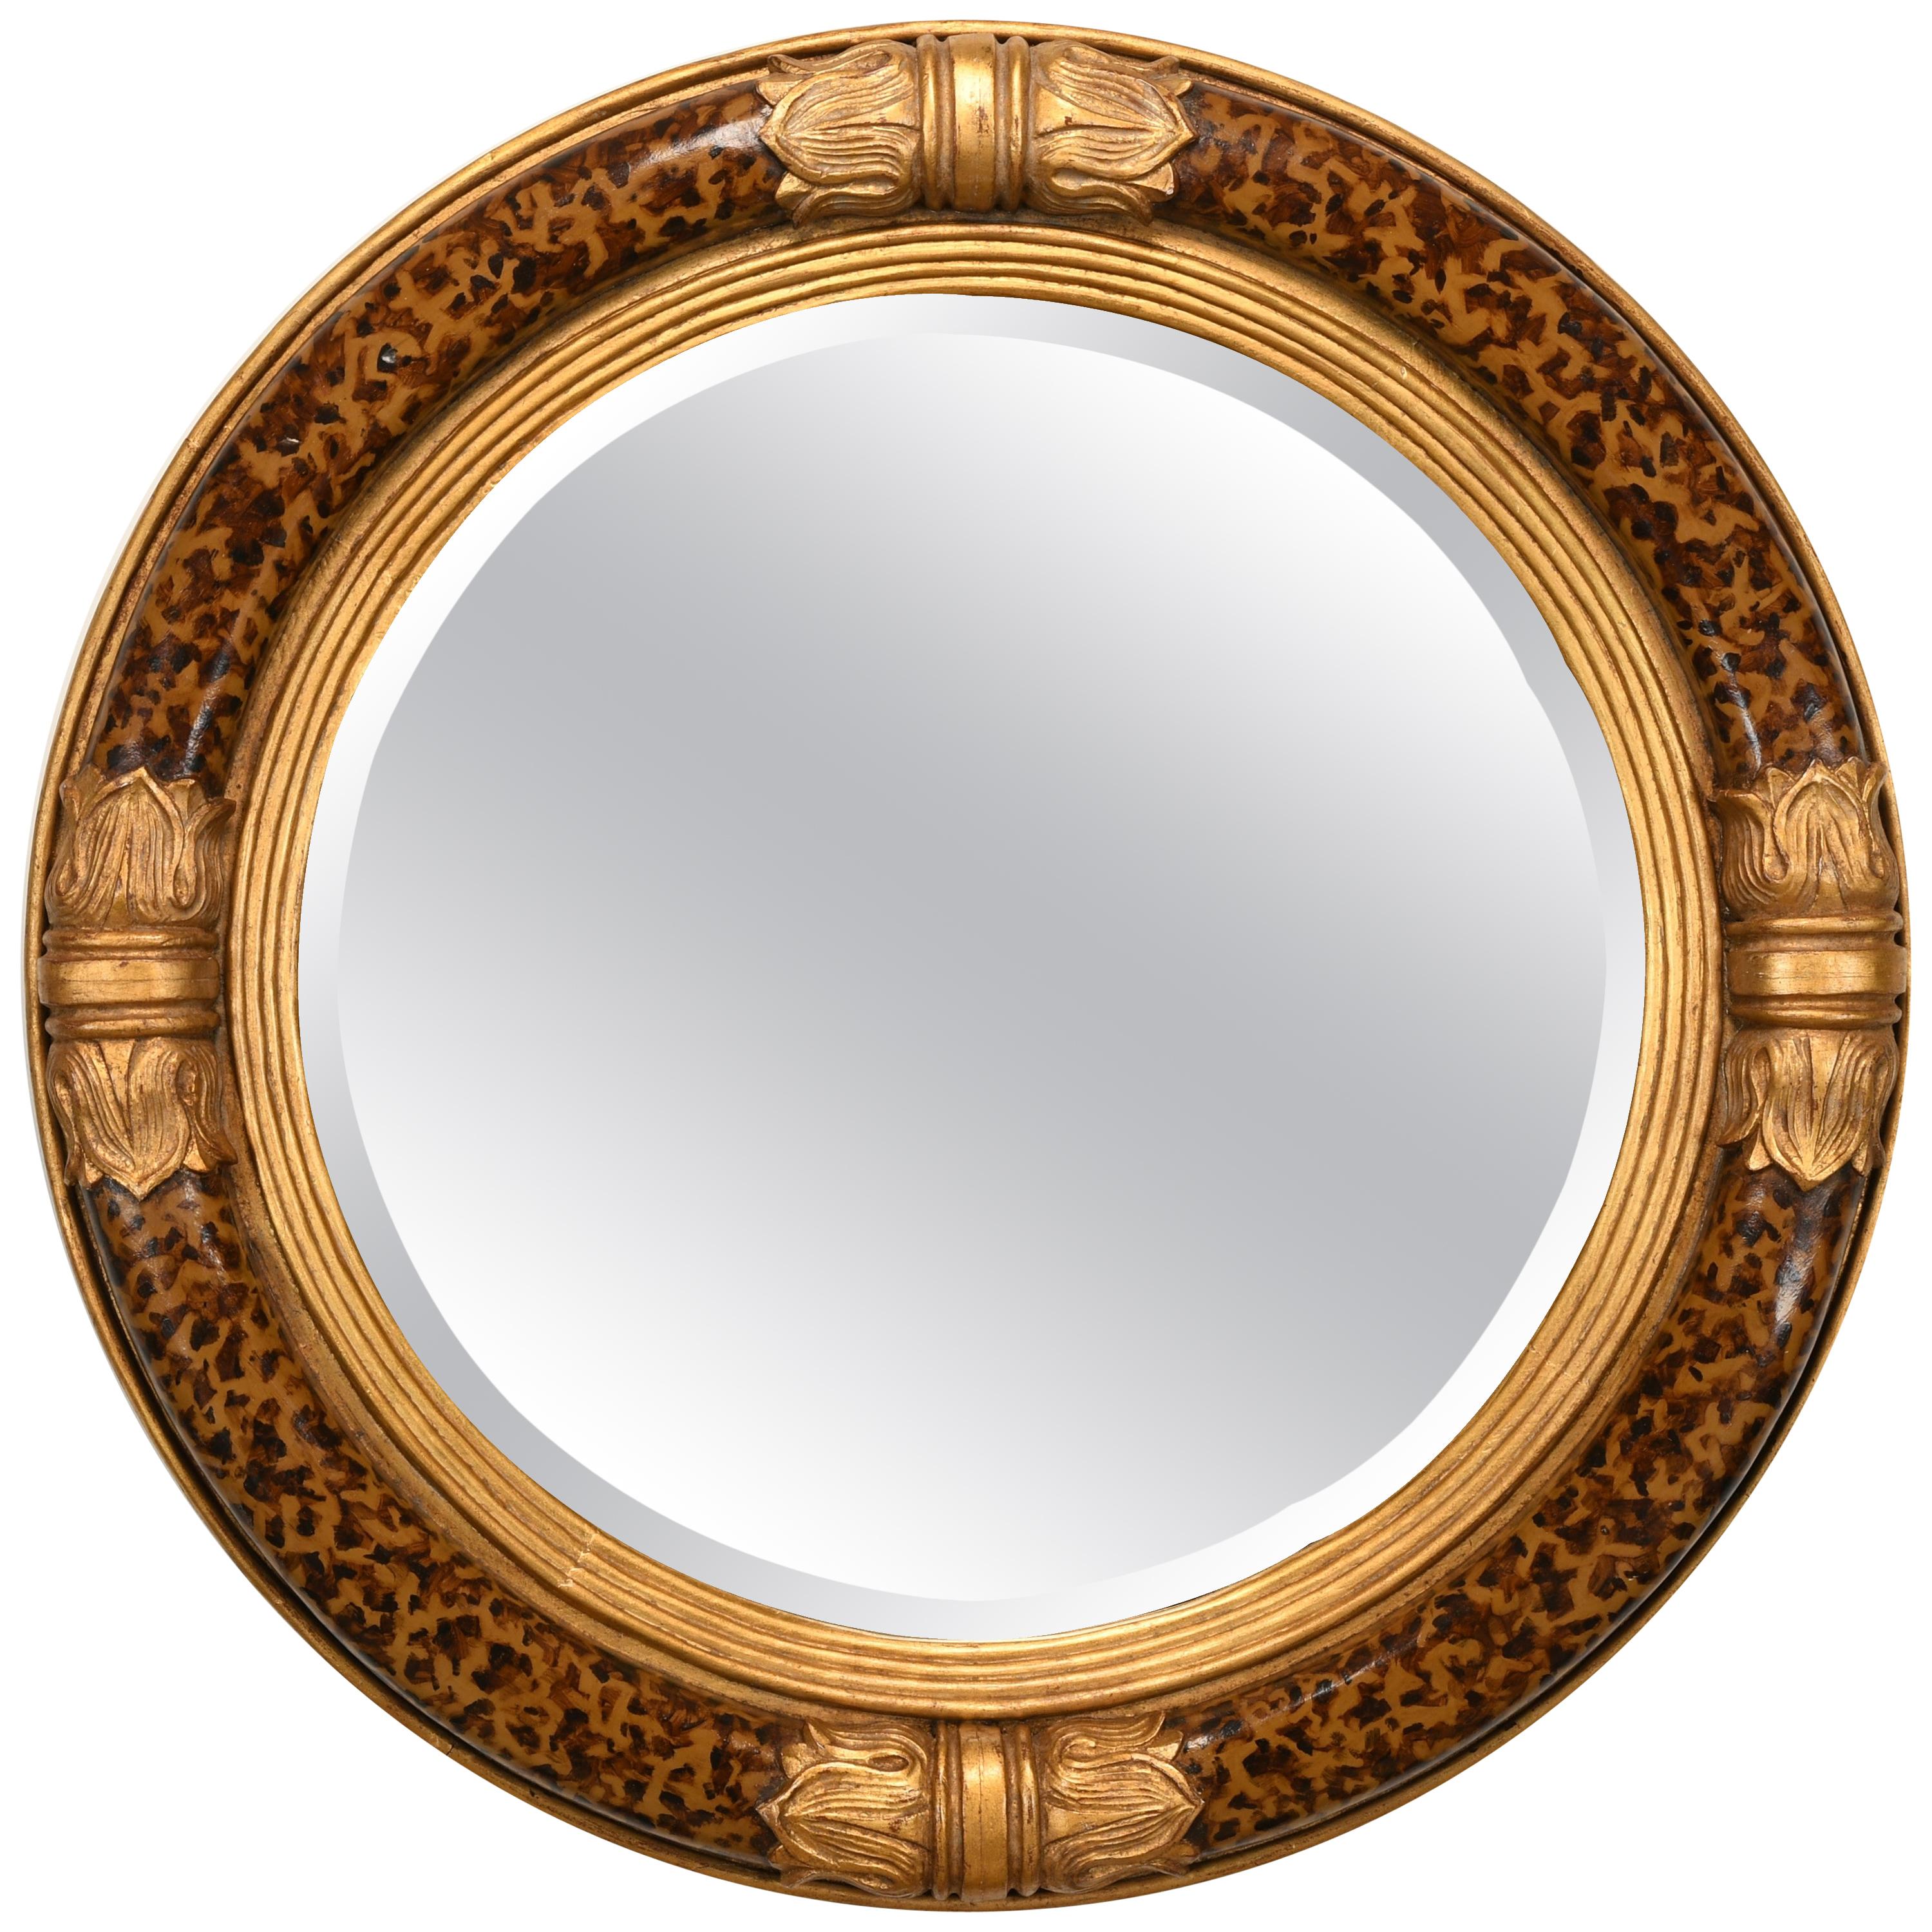 Decorative Empire Style Mirror, Late 20th Century